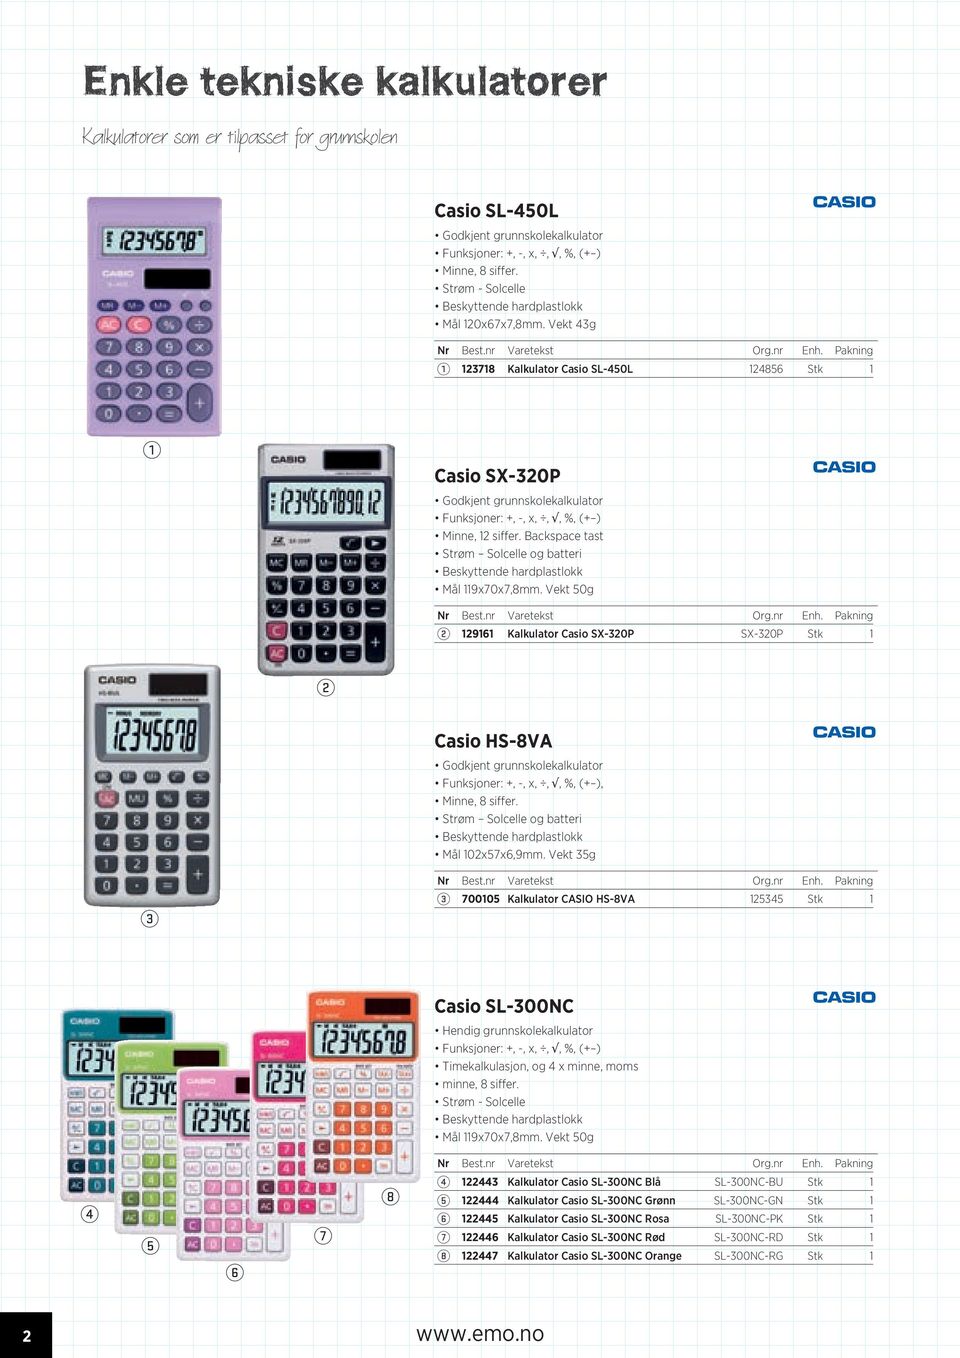 Vekt 50g 96 Kalkulator Casio SX-0P SX-0P Stk Casio HS-8VA Godkjent grunnskolekalkulator Funksjoner: +, -, x,,, %, (+ ), Minne, 8 siffer. Strøm Solcelle og batteri Mål 0x57x6,9mm.